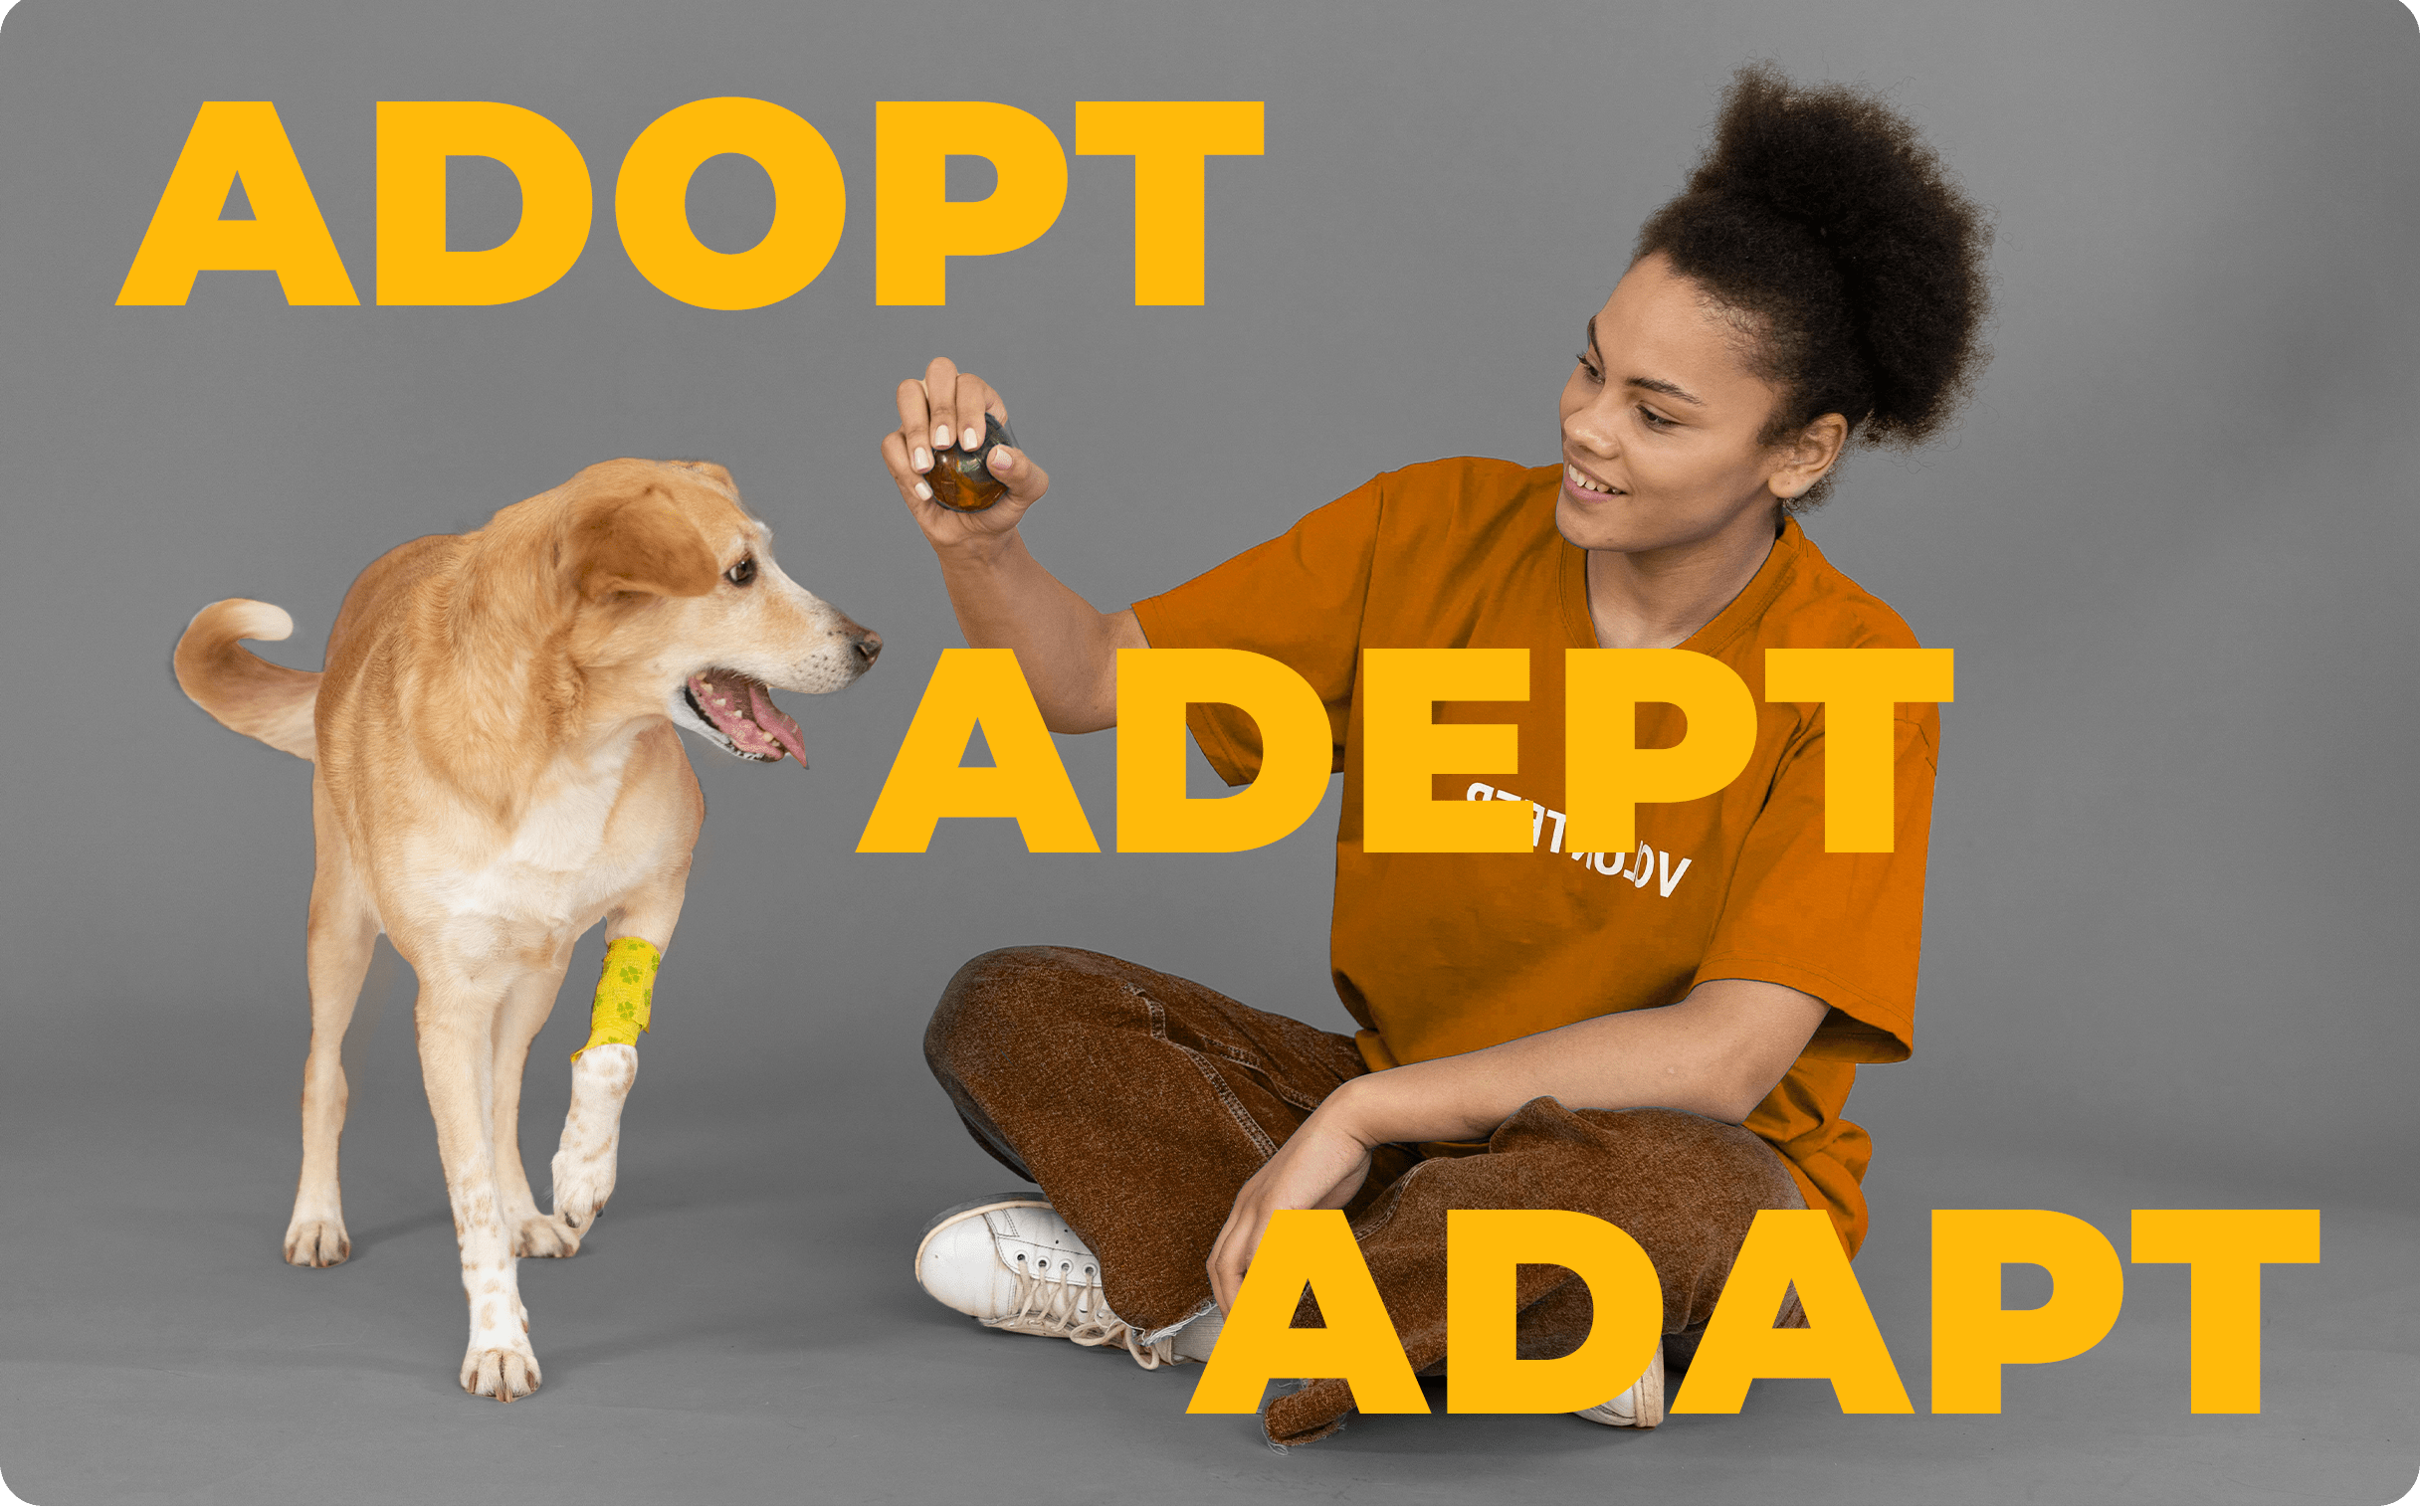 Understanding "adapt", "adept", and "adopt"